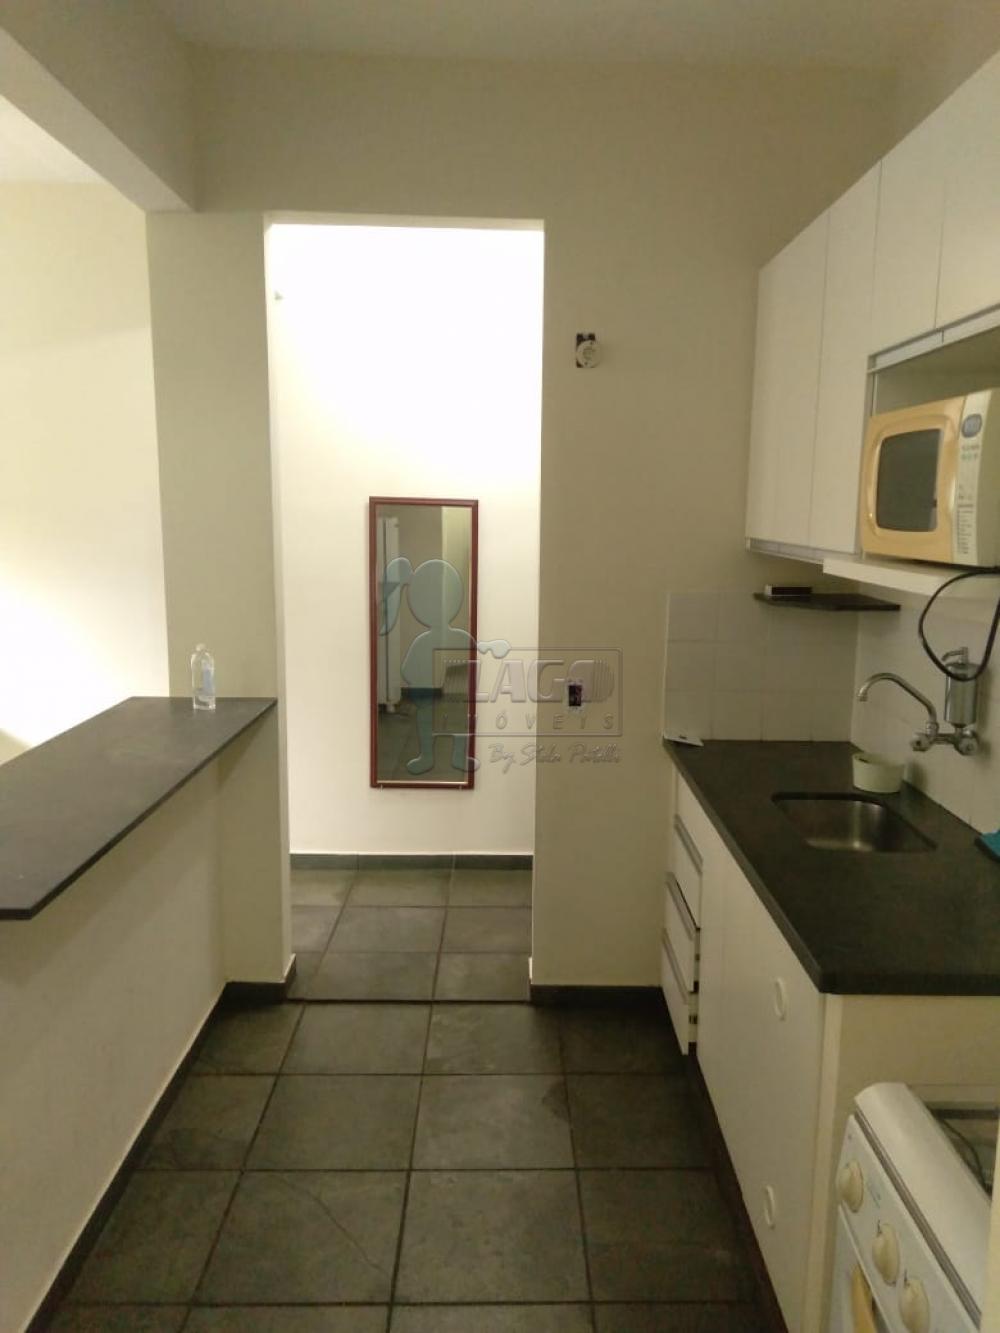 Alugar Apartamentos / Kitchenet / Flat em Ribeirão Preto R$ 600,00 - Foto 2